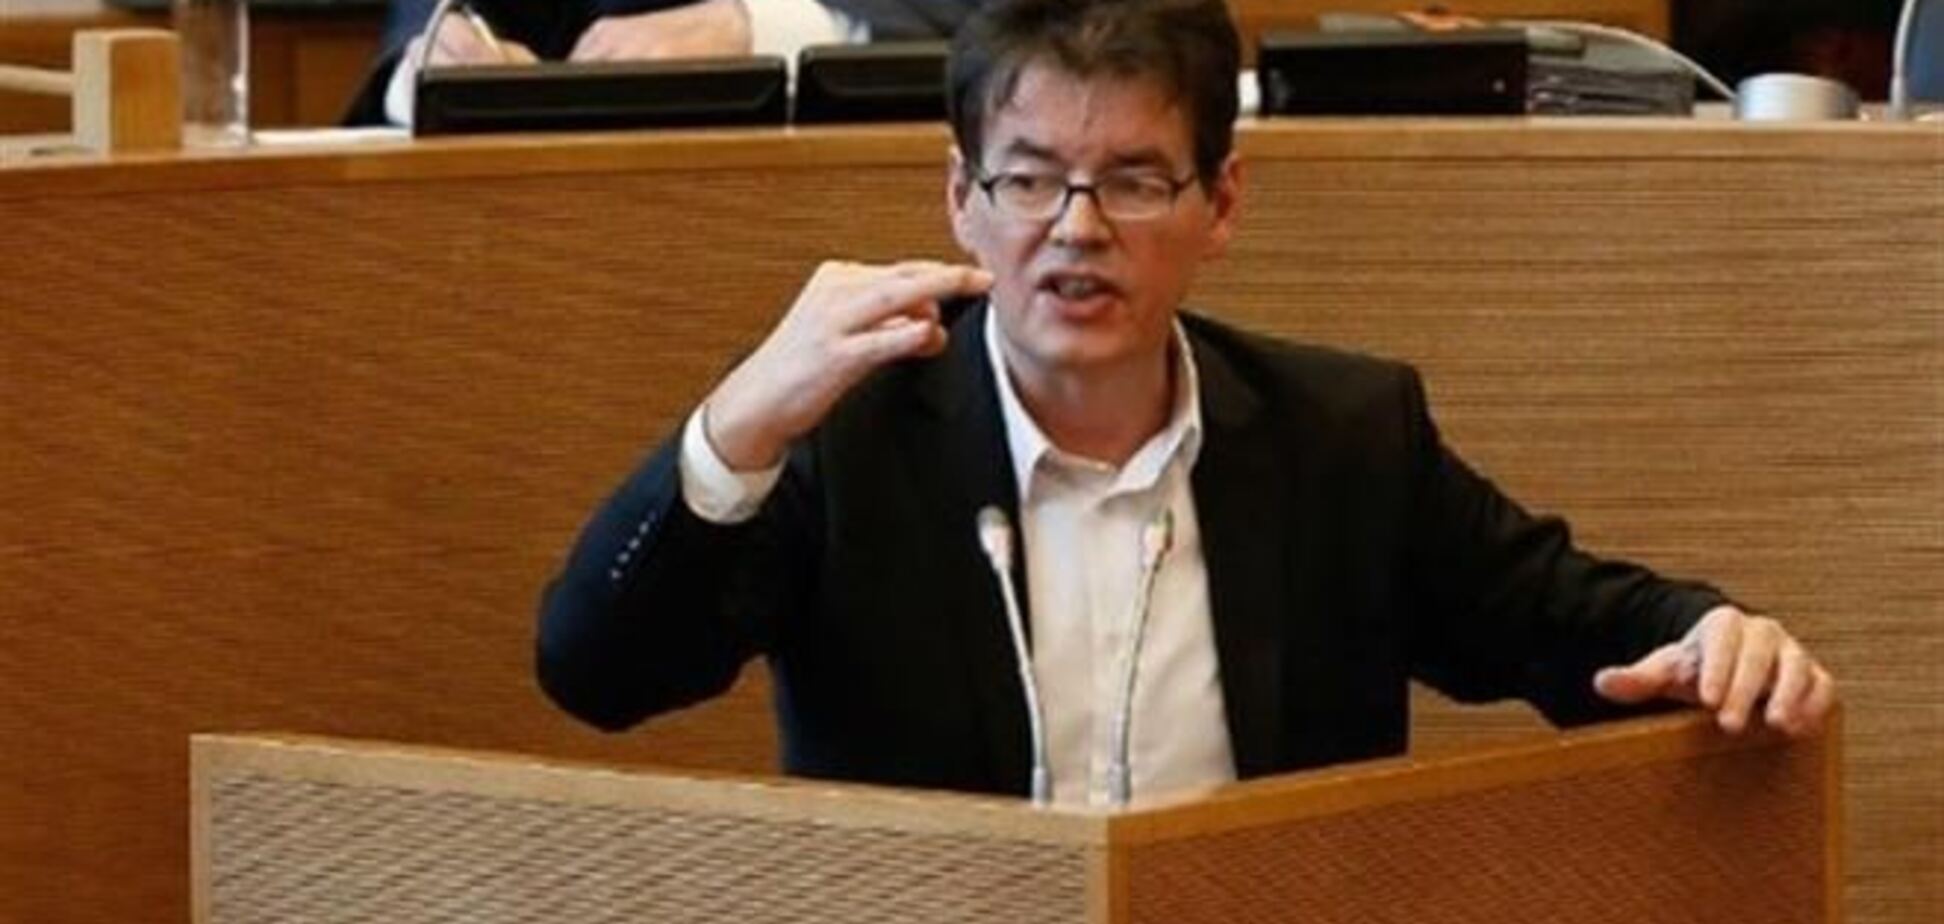 Бельгийский политик выдал убийство жены за суицид